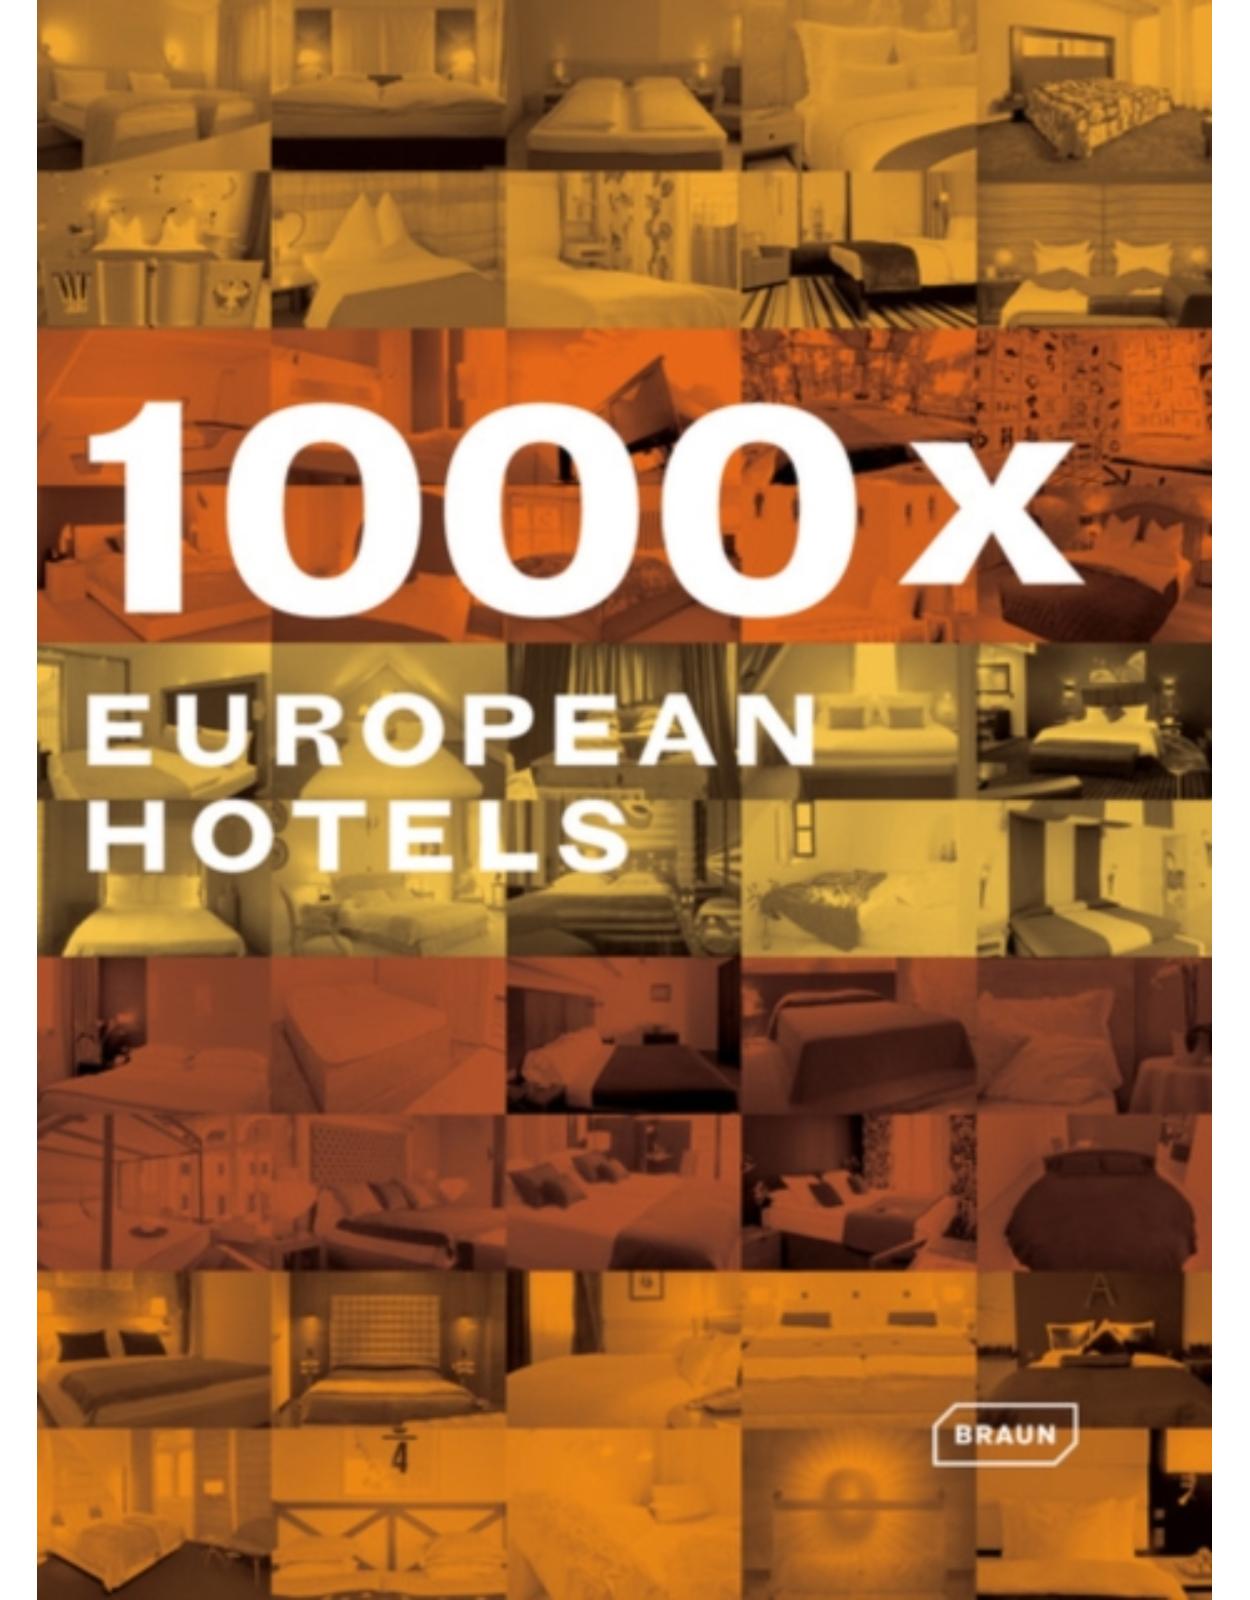 1000 x European Hotels